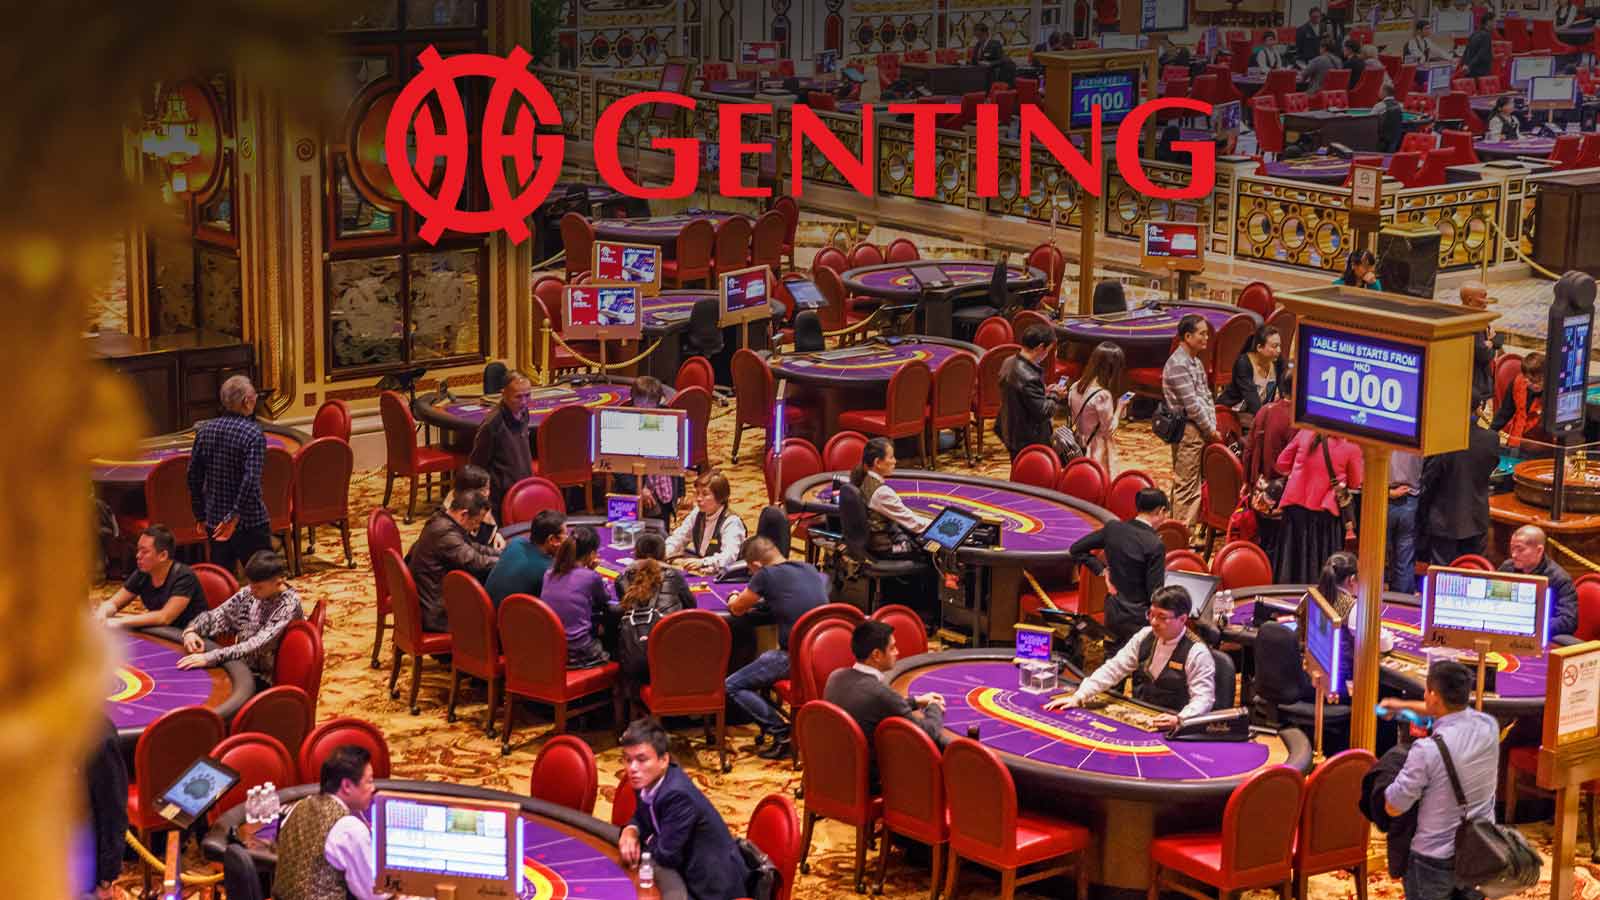 What will happen next in Macau's gambling industry